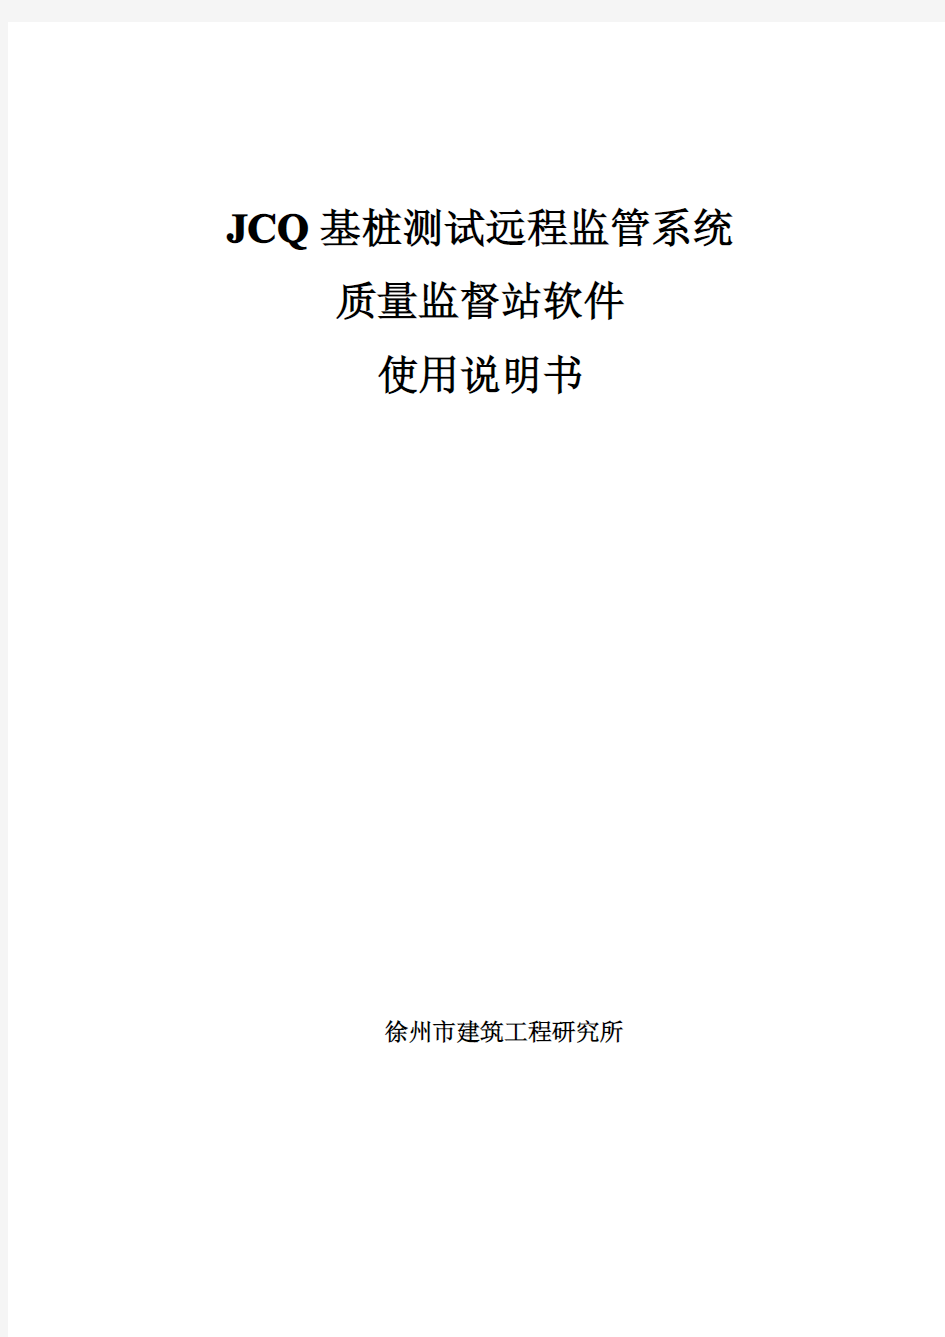 JCQ基桩检测远程监控系统质监站使用说明书